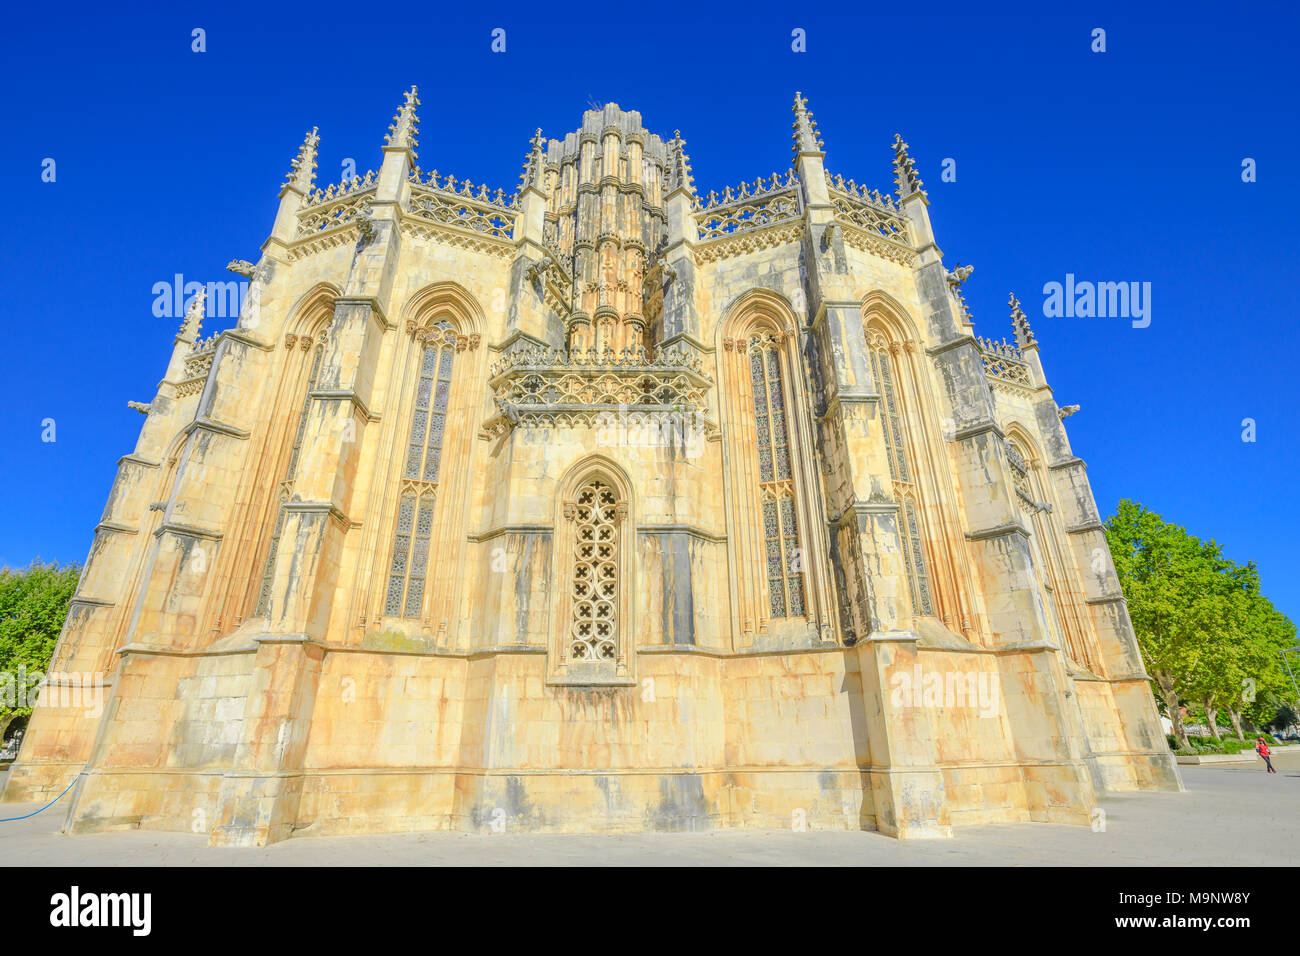 Monasterio de Batalha popular, uno de los mejores ejemplos de la arquitectura gótica en Portugal, mezclado con el estilo manuelino. Convento dominicano de Santa María de la victoria en la ciudad de Batalha, Patrimonio de la Unesco. Foto de stock